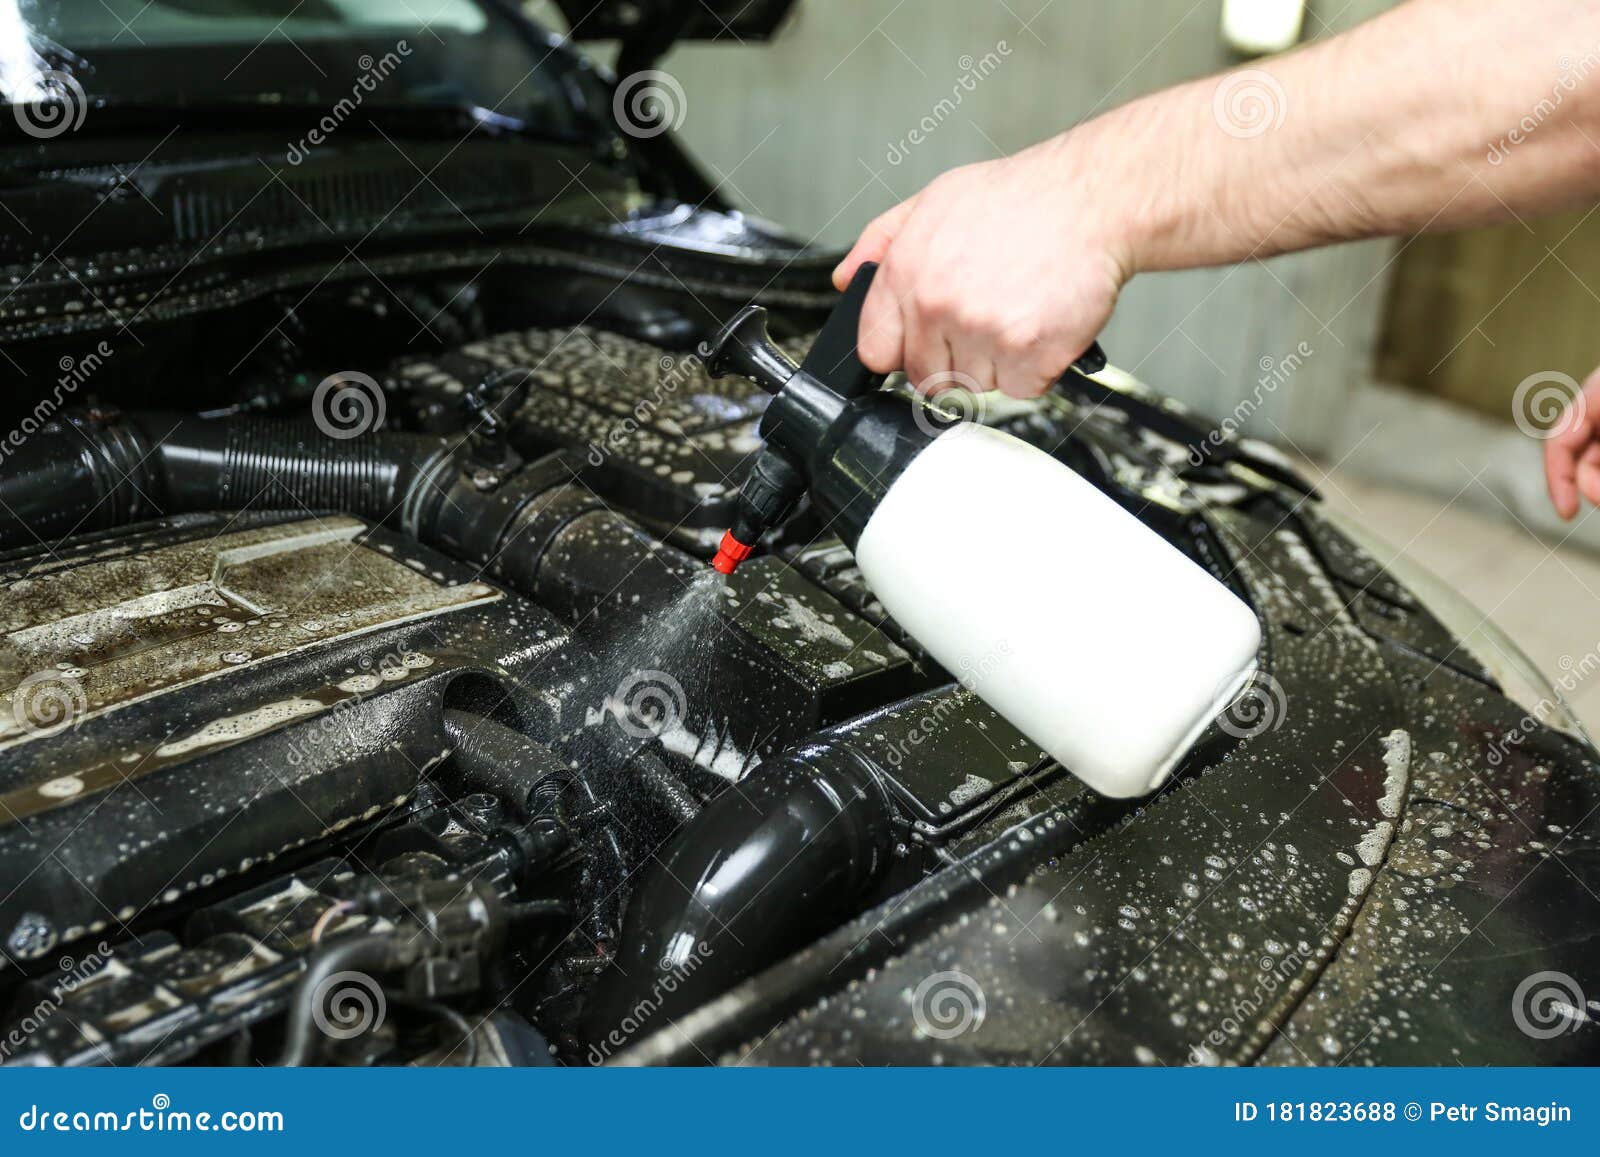 Car Washing Close-up. Engine Washing Stock Photo - Image of